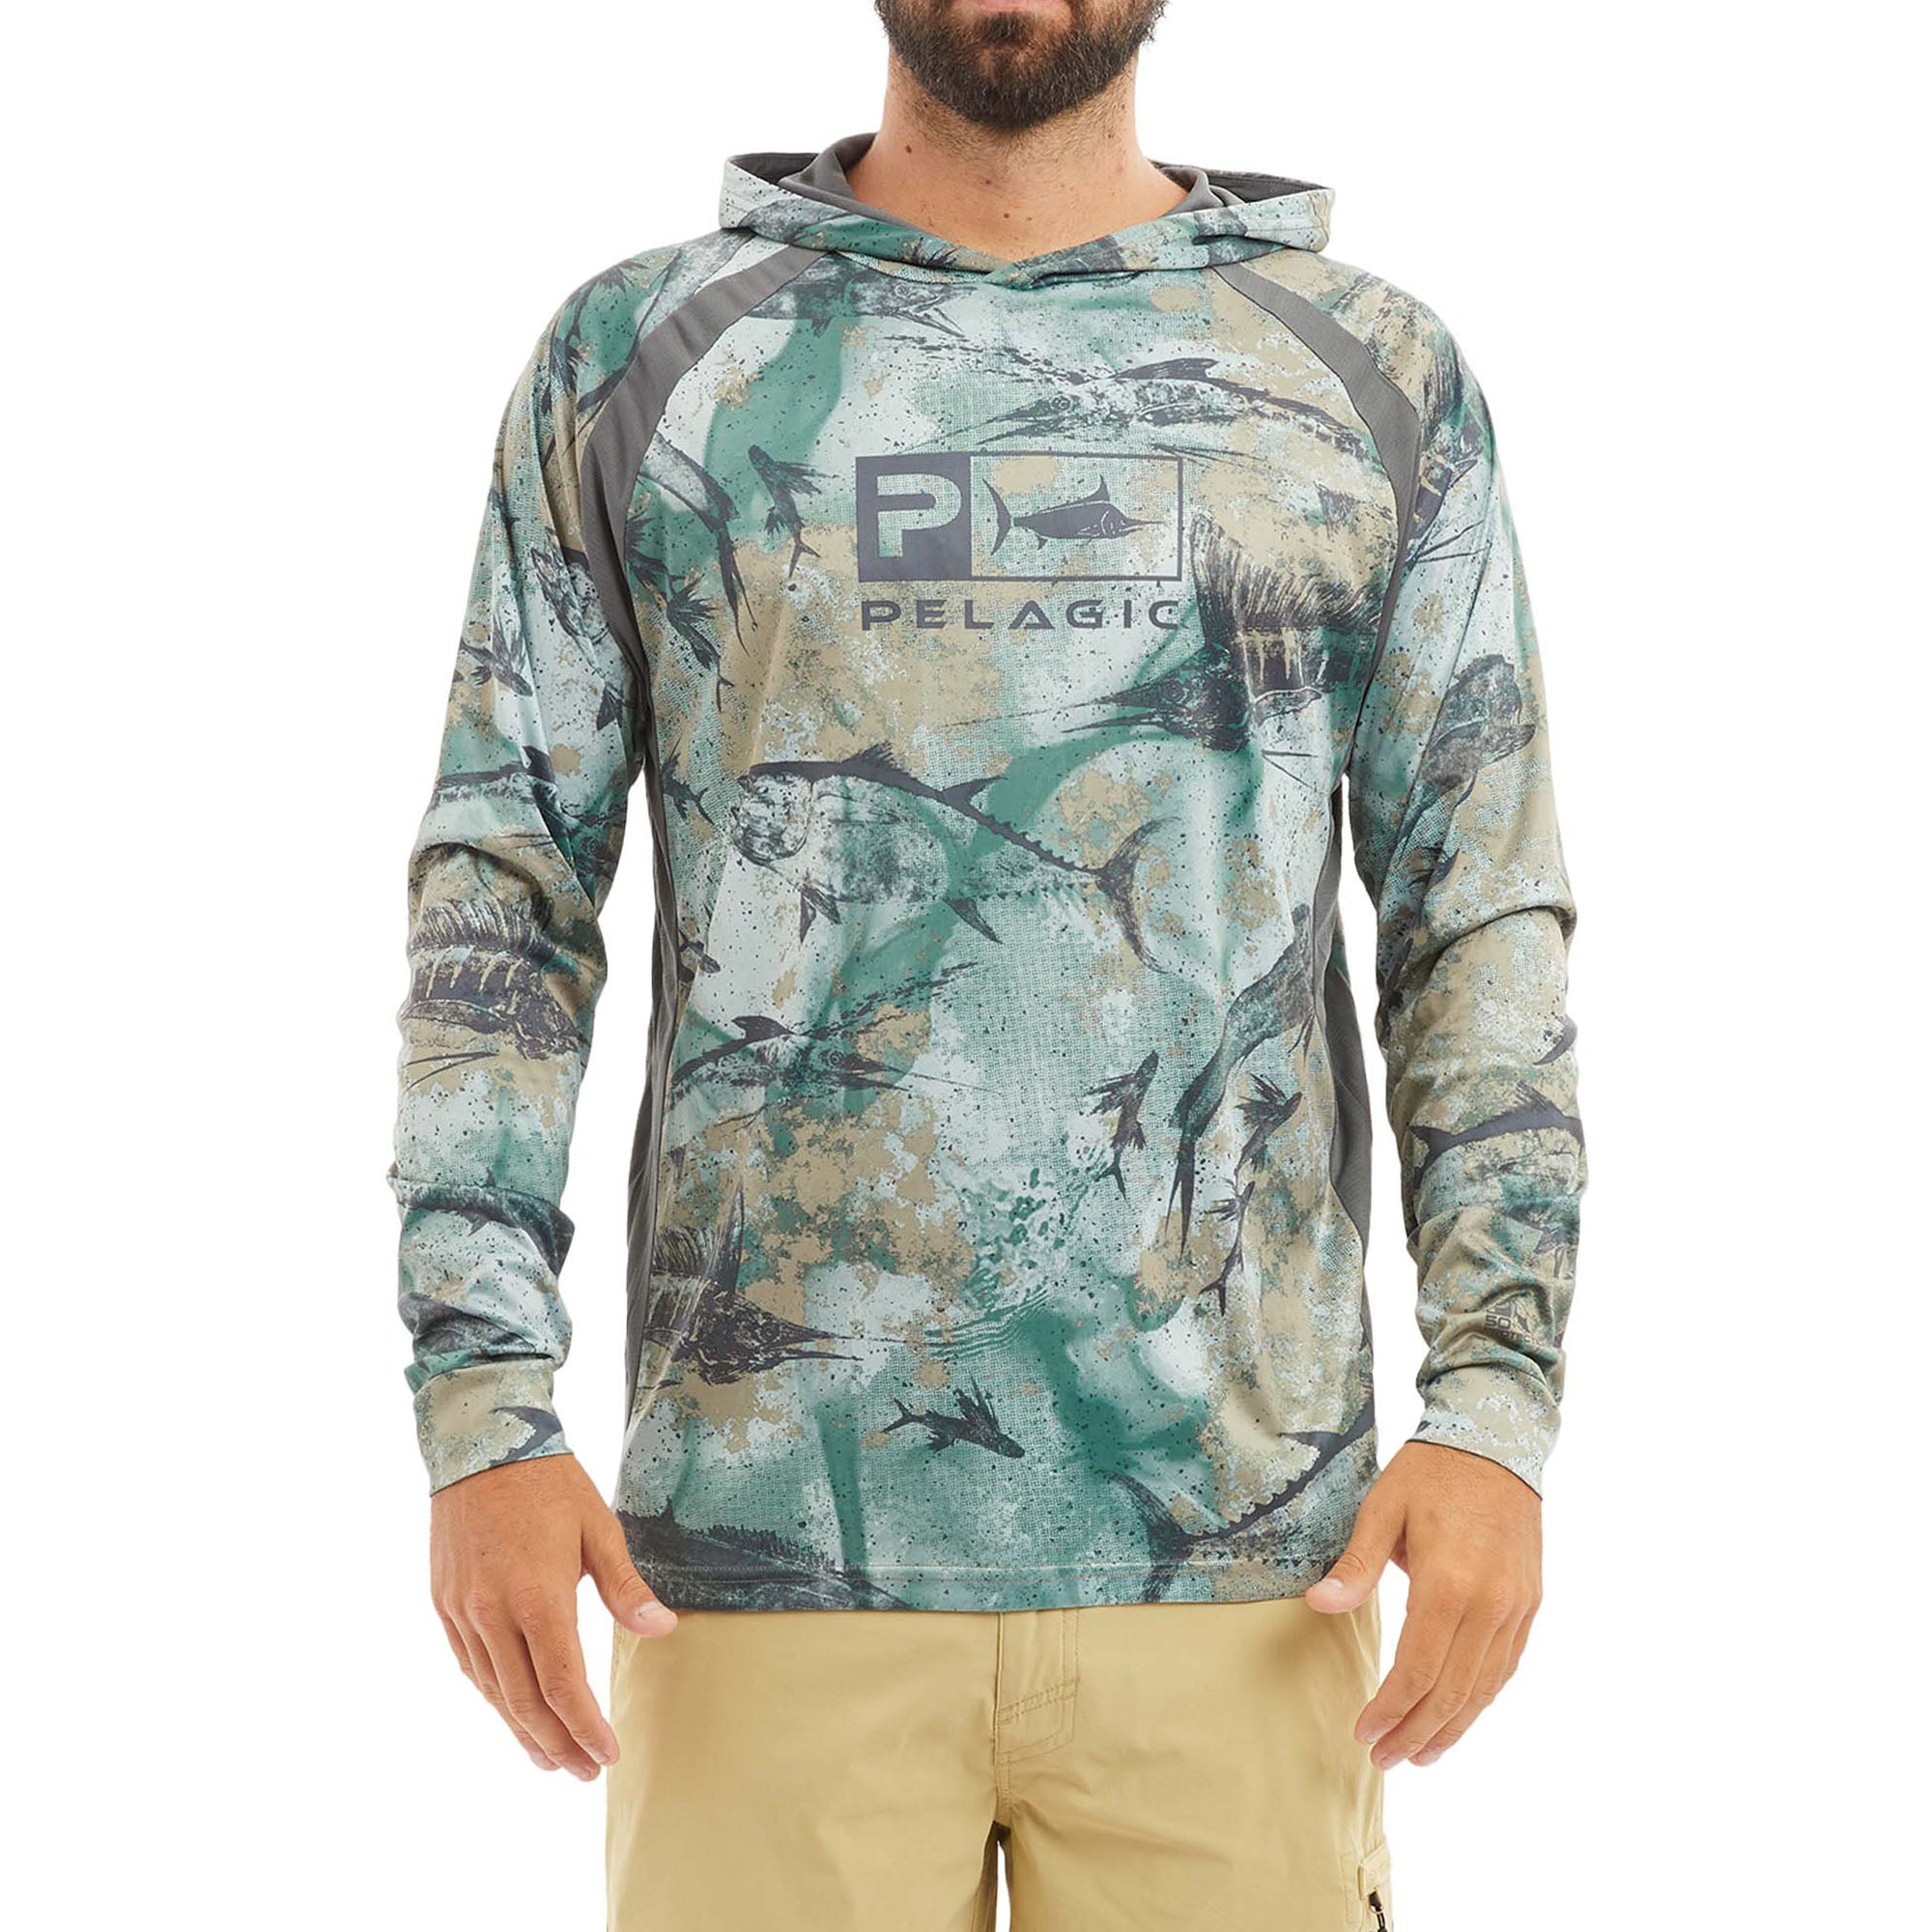 Vaportek Hooded Fishing Shirt